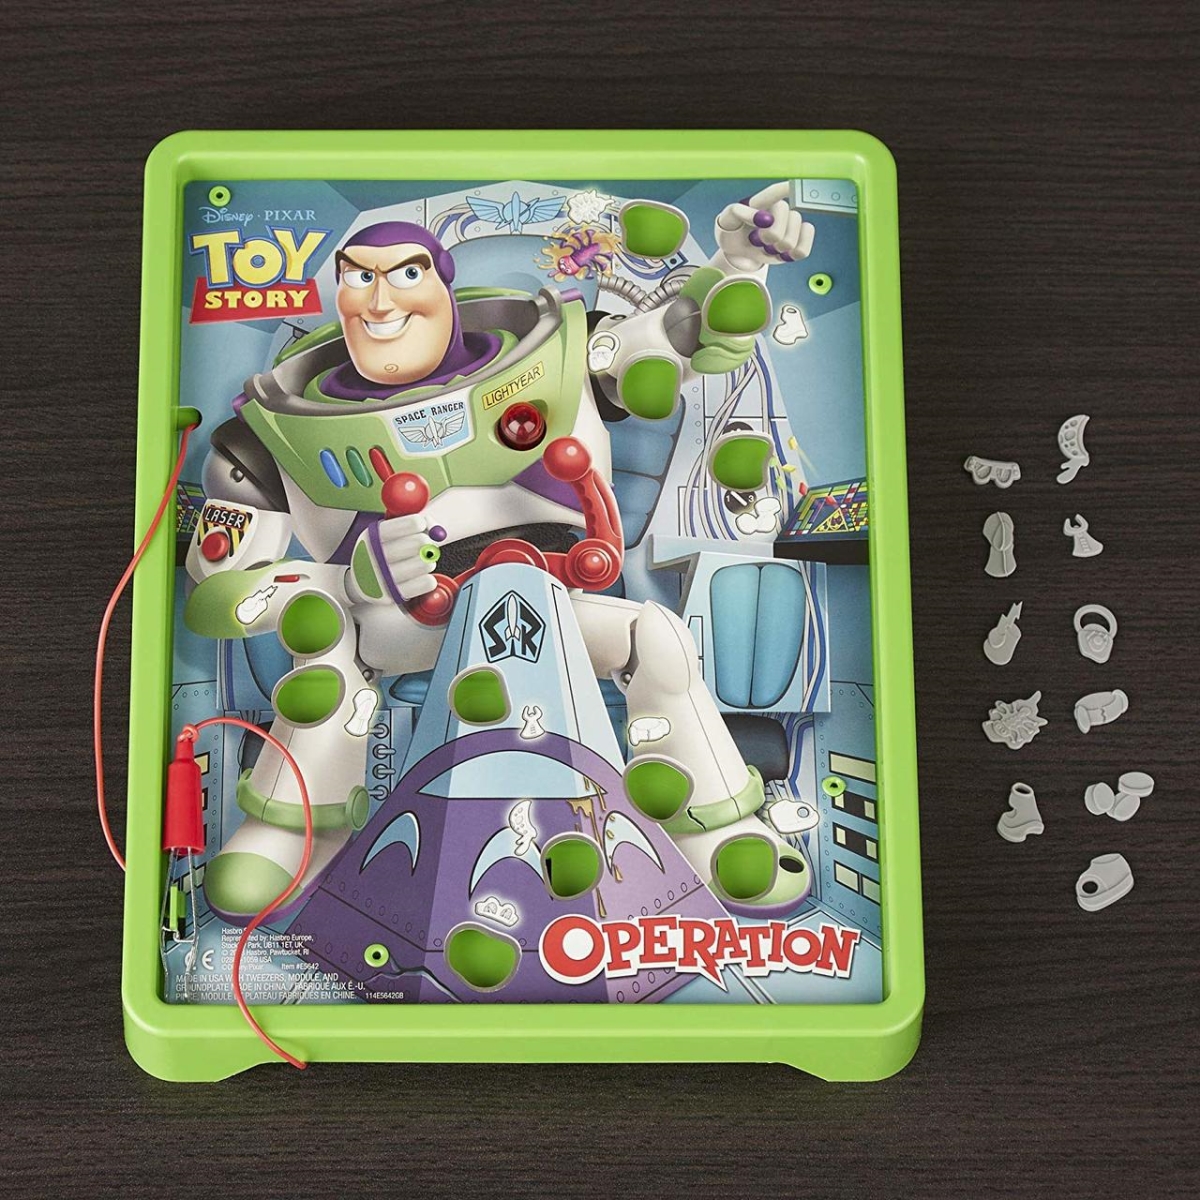 30372070 Disney Pixar Toy Story Buzz Lightyear Board Game